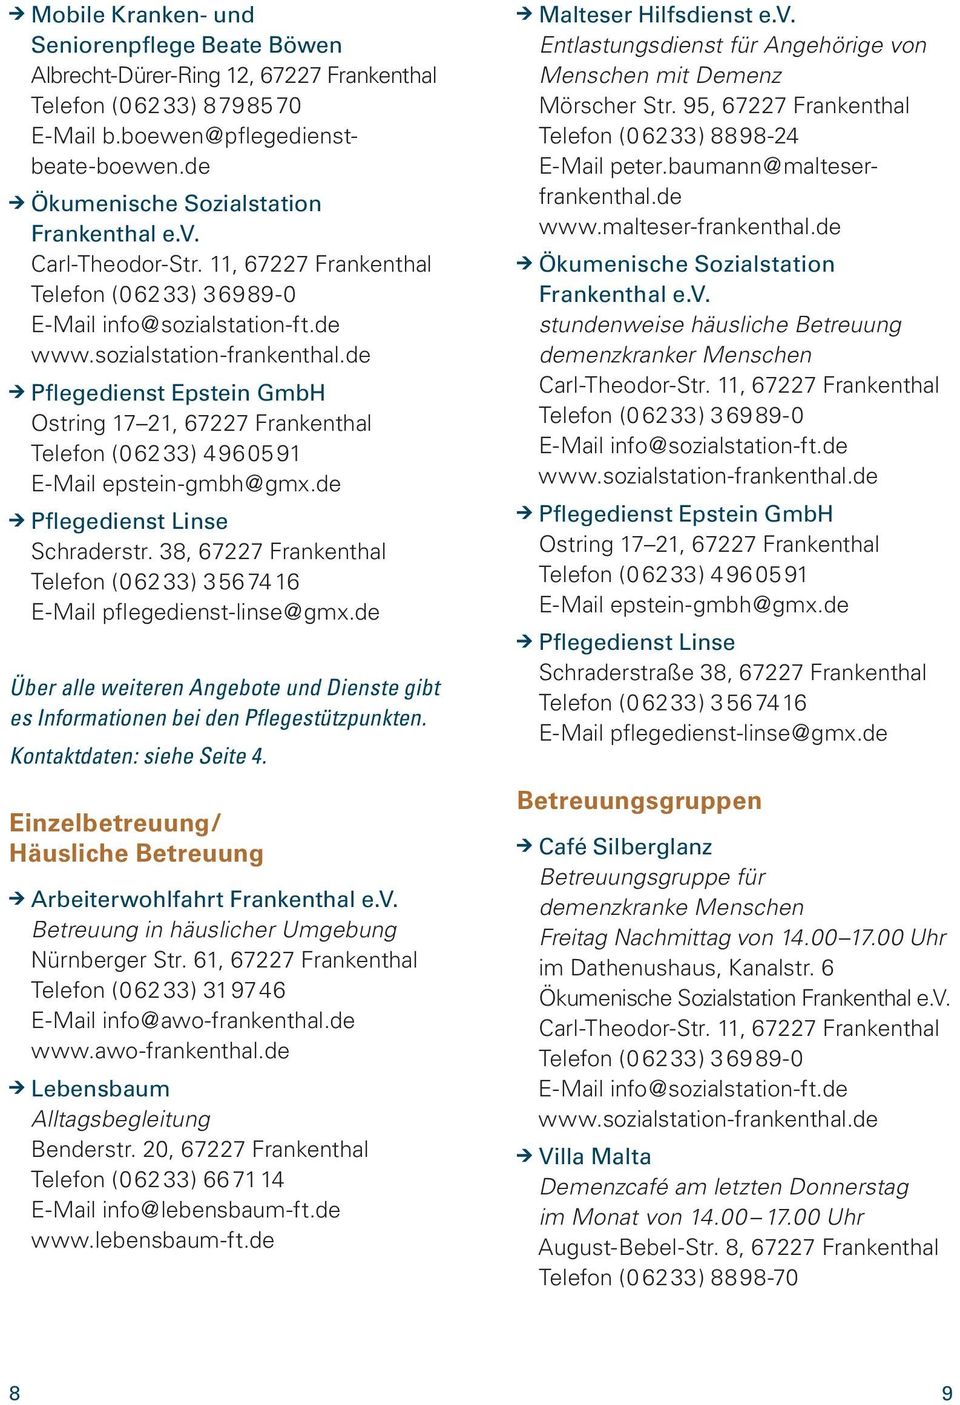 38, 67227 Frankenthal Telefon (06233) 35674 16 E-Mail pflegedienst-linse@gmx.de Über alle weiteren Angebote und Dienste gibt es Informationen bei den Pflegestützpunkten. Kontaktdaten: siehe Seite 4.